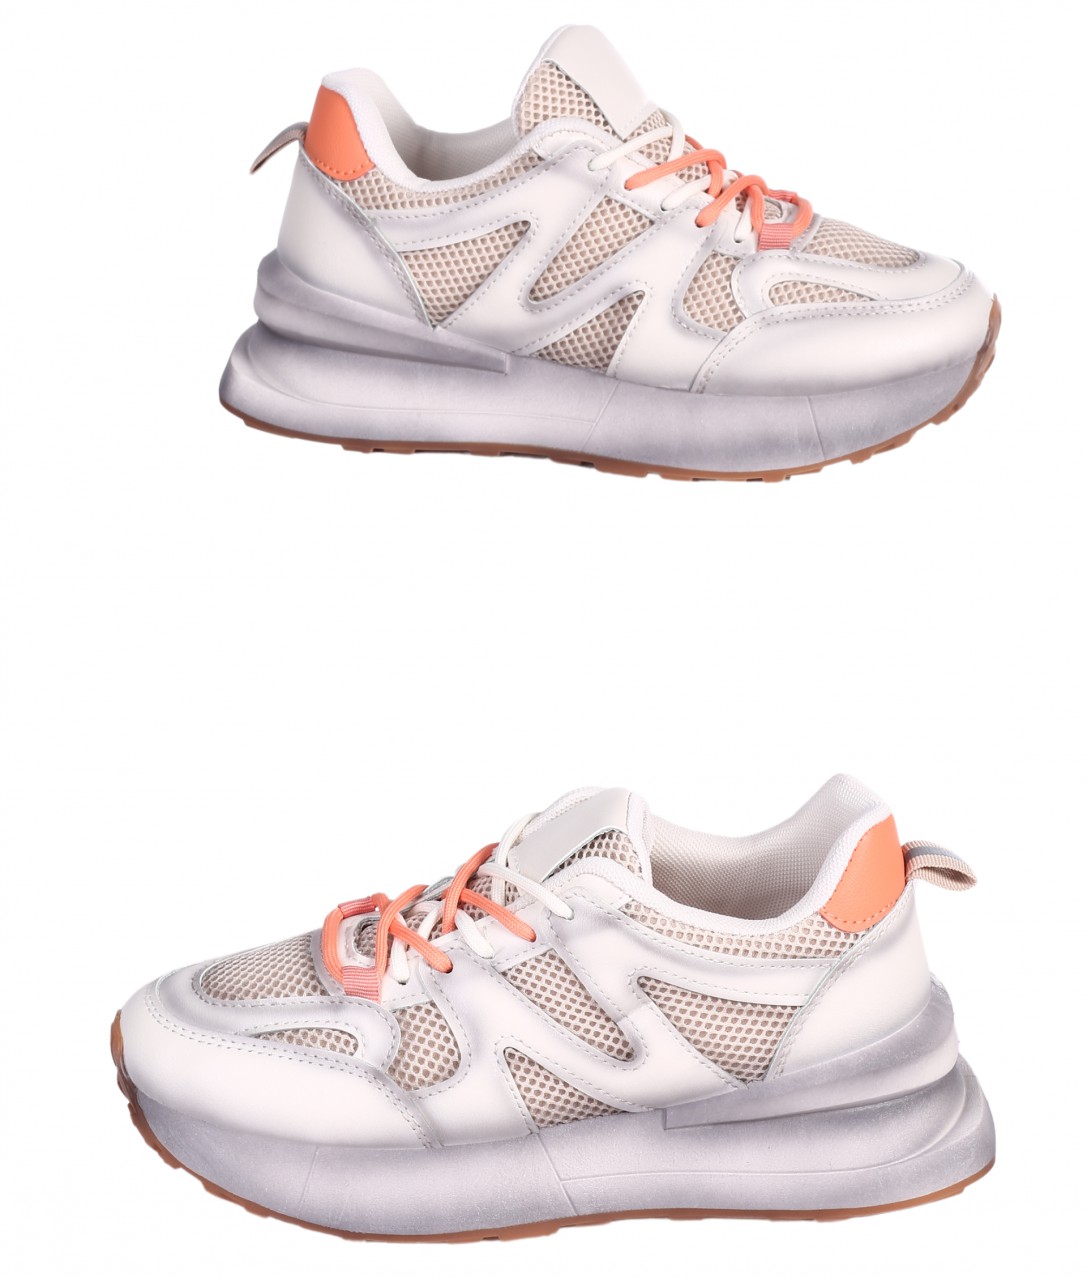 Eжедневни дамски обувки е бежов/оранжев цвят 3U-24002 beige/orange